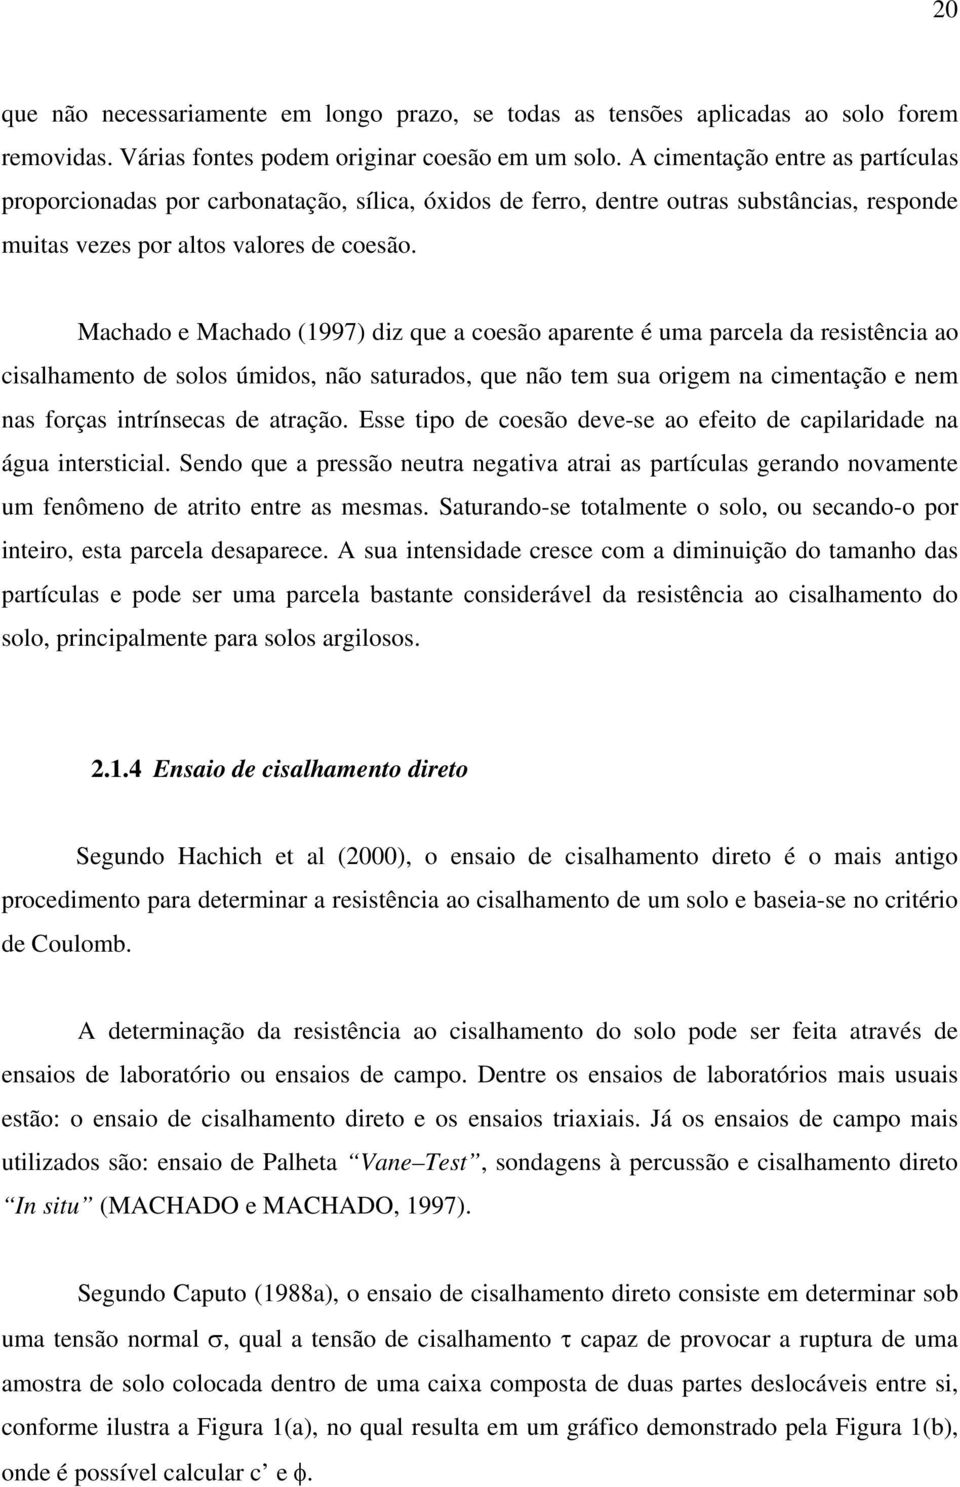 Machado e Machado (1997) diz que a coesão aparente é uma parcela da resistência ao cisalhamento de solos úmidos, não saturados, que não tem sua origem na cimentação e nem nas forças intrínsecas de